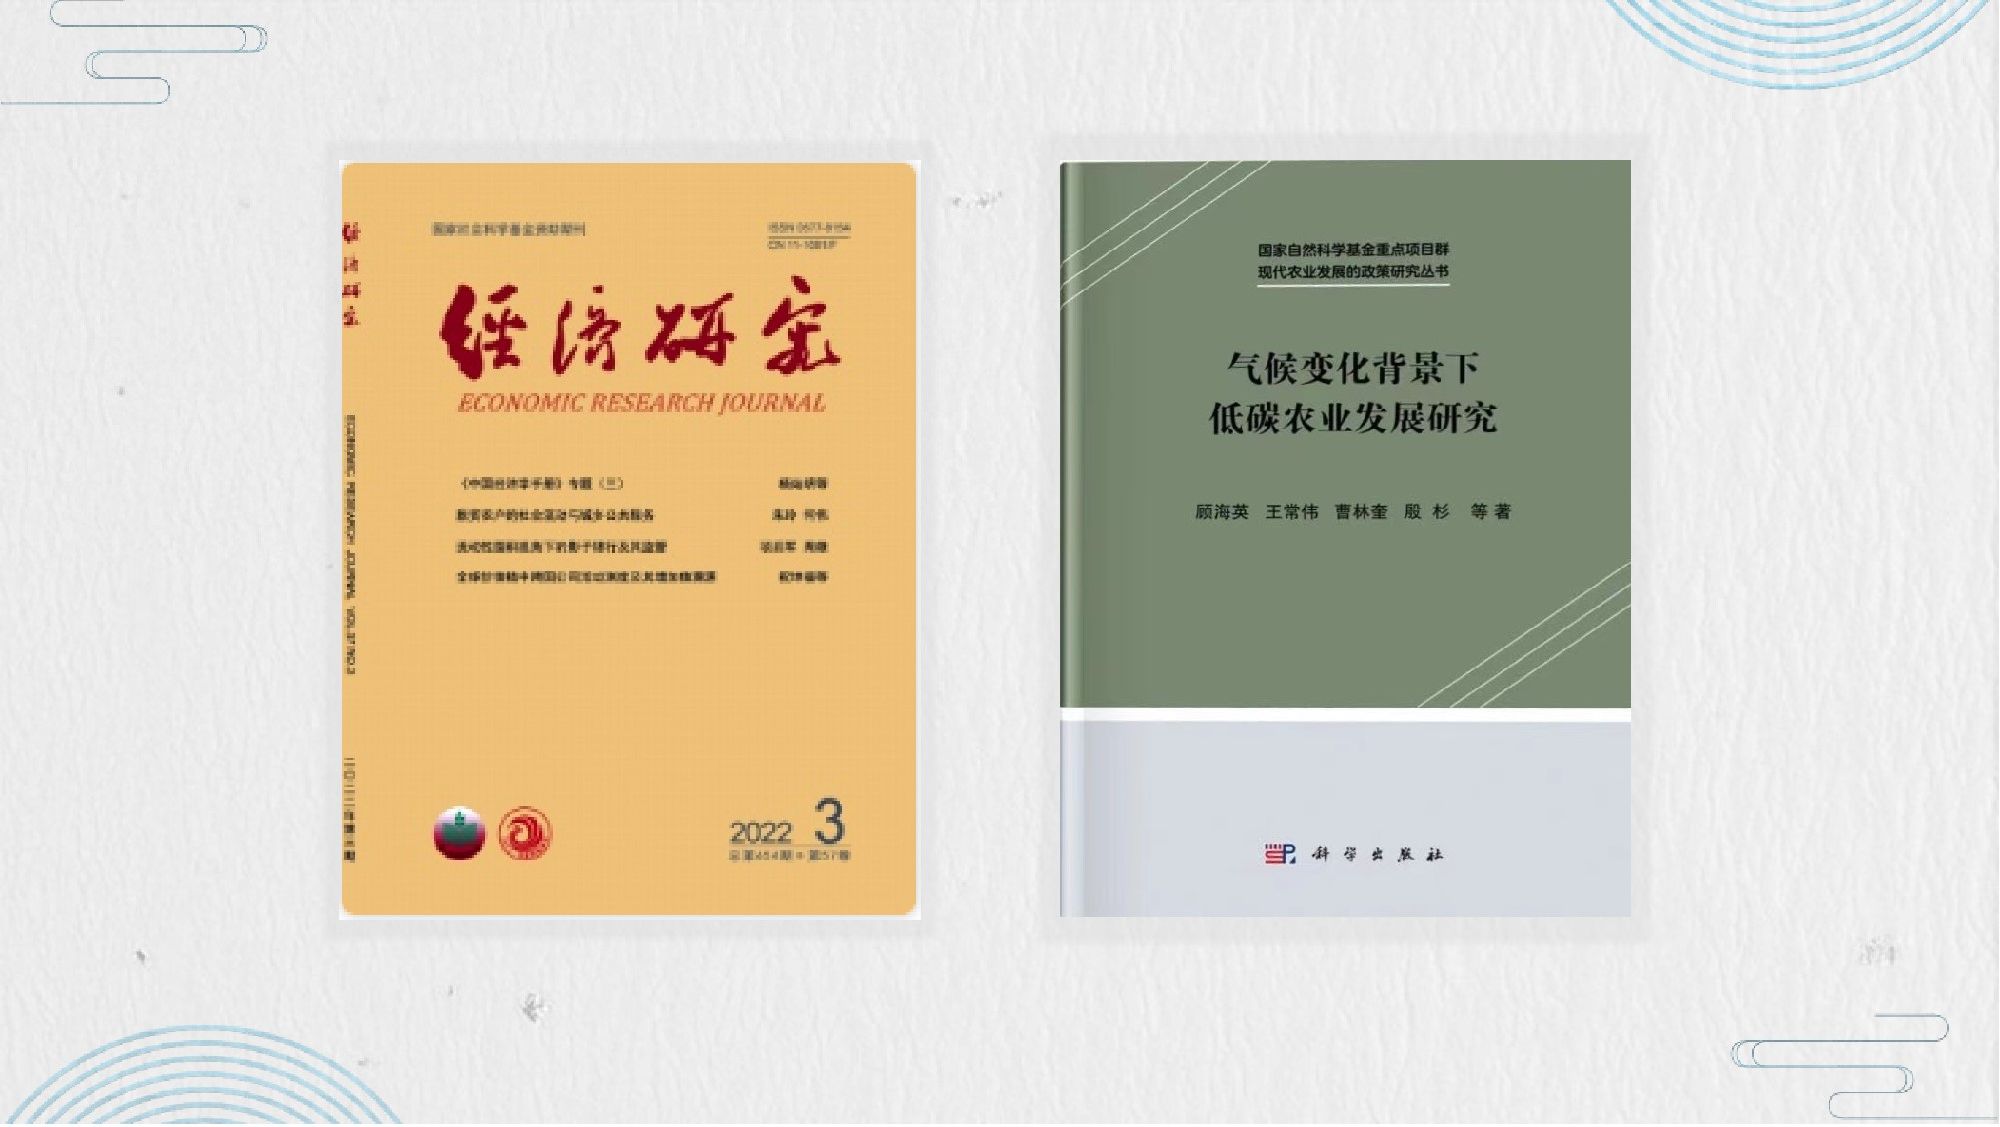 我院2项成果获上海市第十五届哲学社会科学优秀成果奖